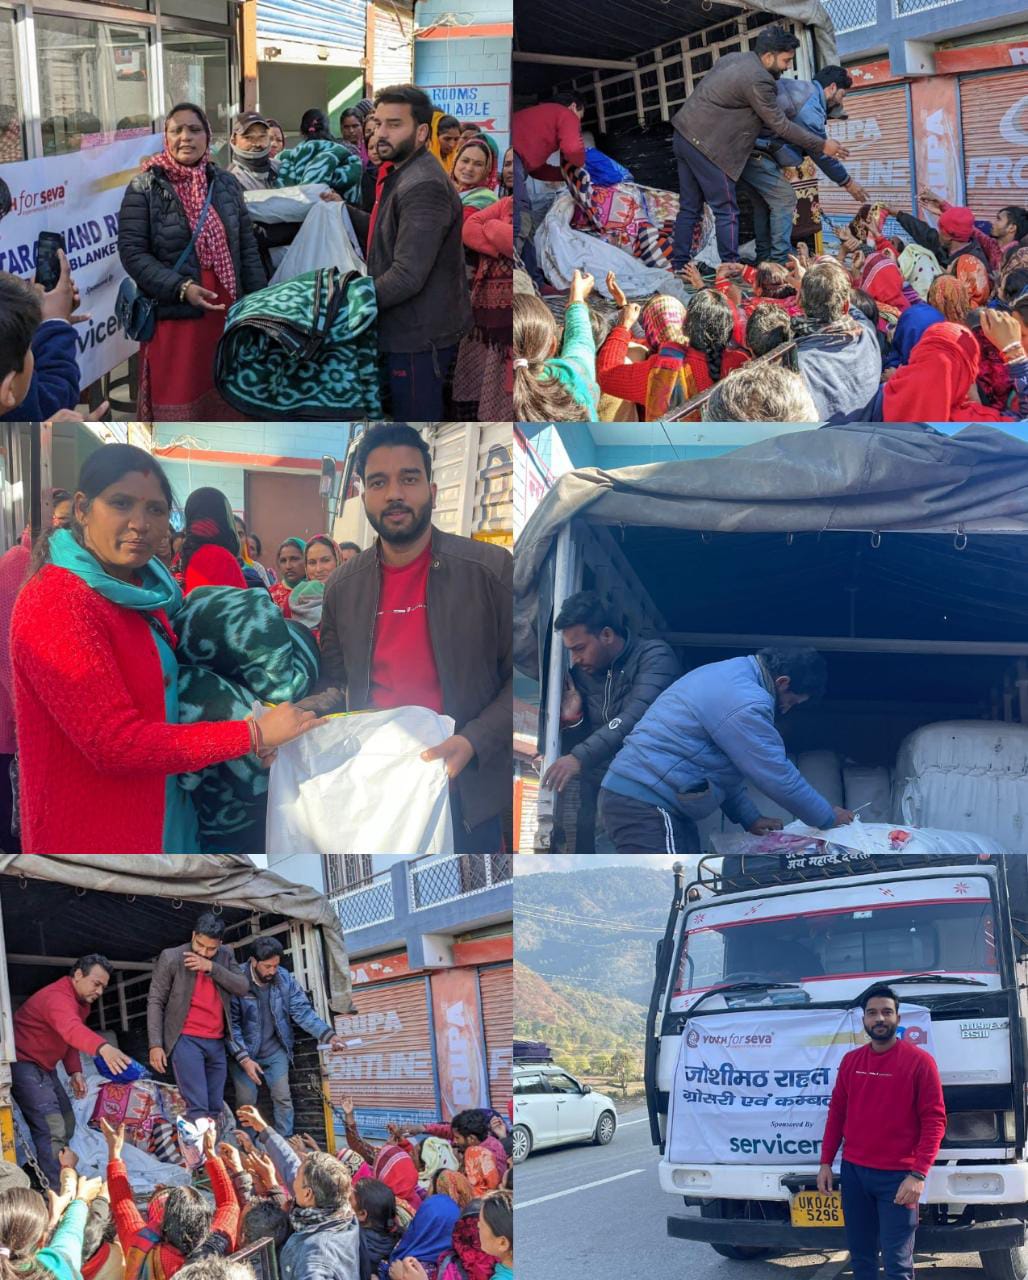 जोशीमठ जाकर यूथ फ़ॉर सेवा संस्था के अर्पण तिवारी व राहुल दंगवाल ने टीम के साथ की राहत सामग्री वितरित